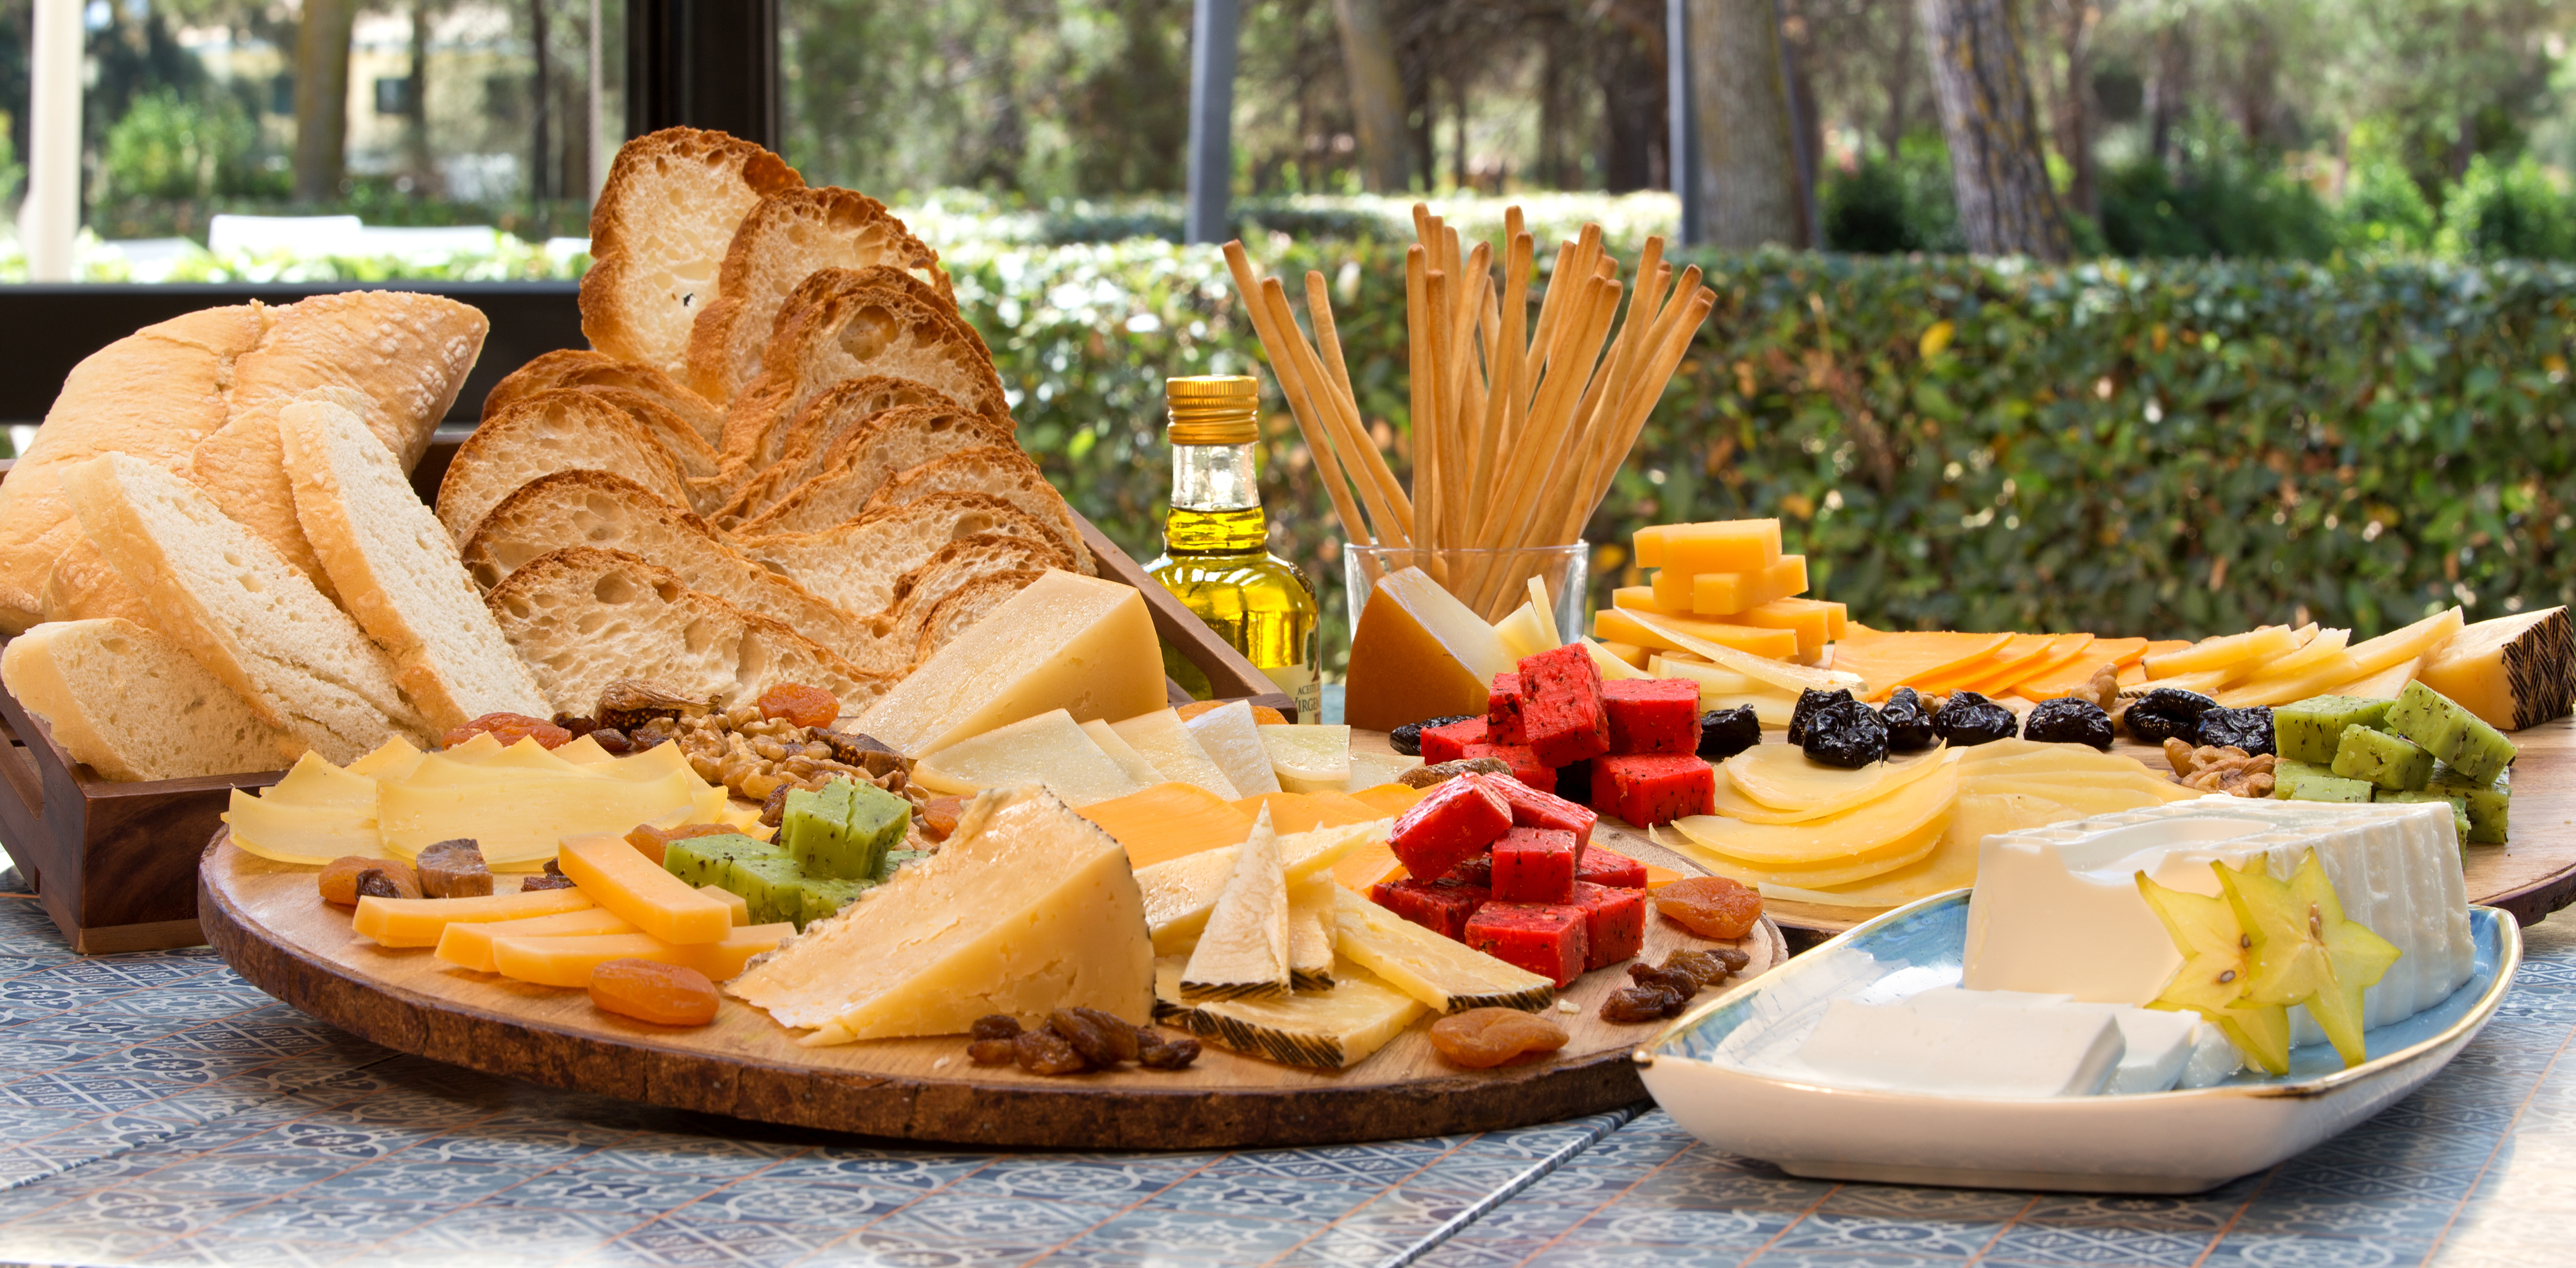 Plato de quesos con varios quesos y panes